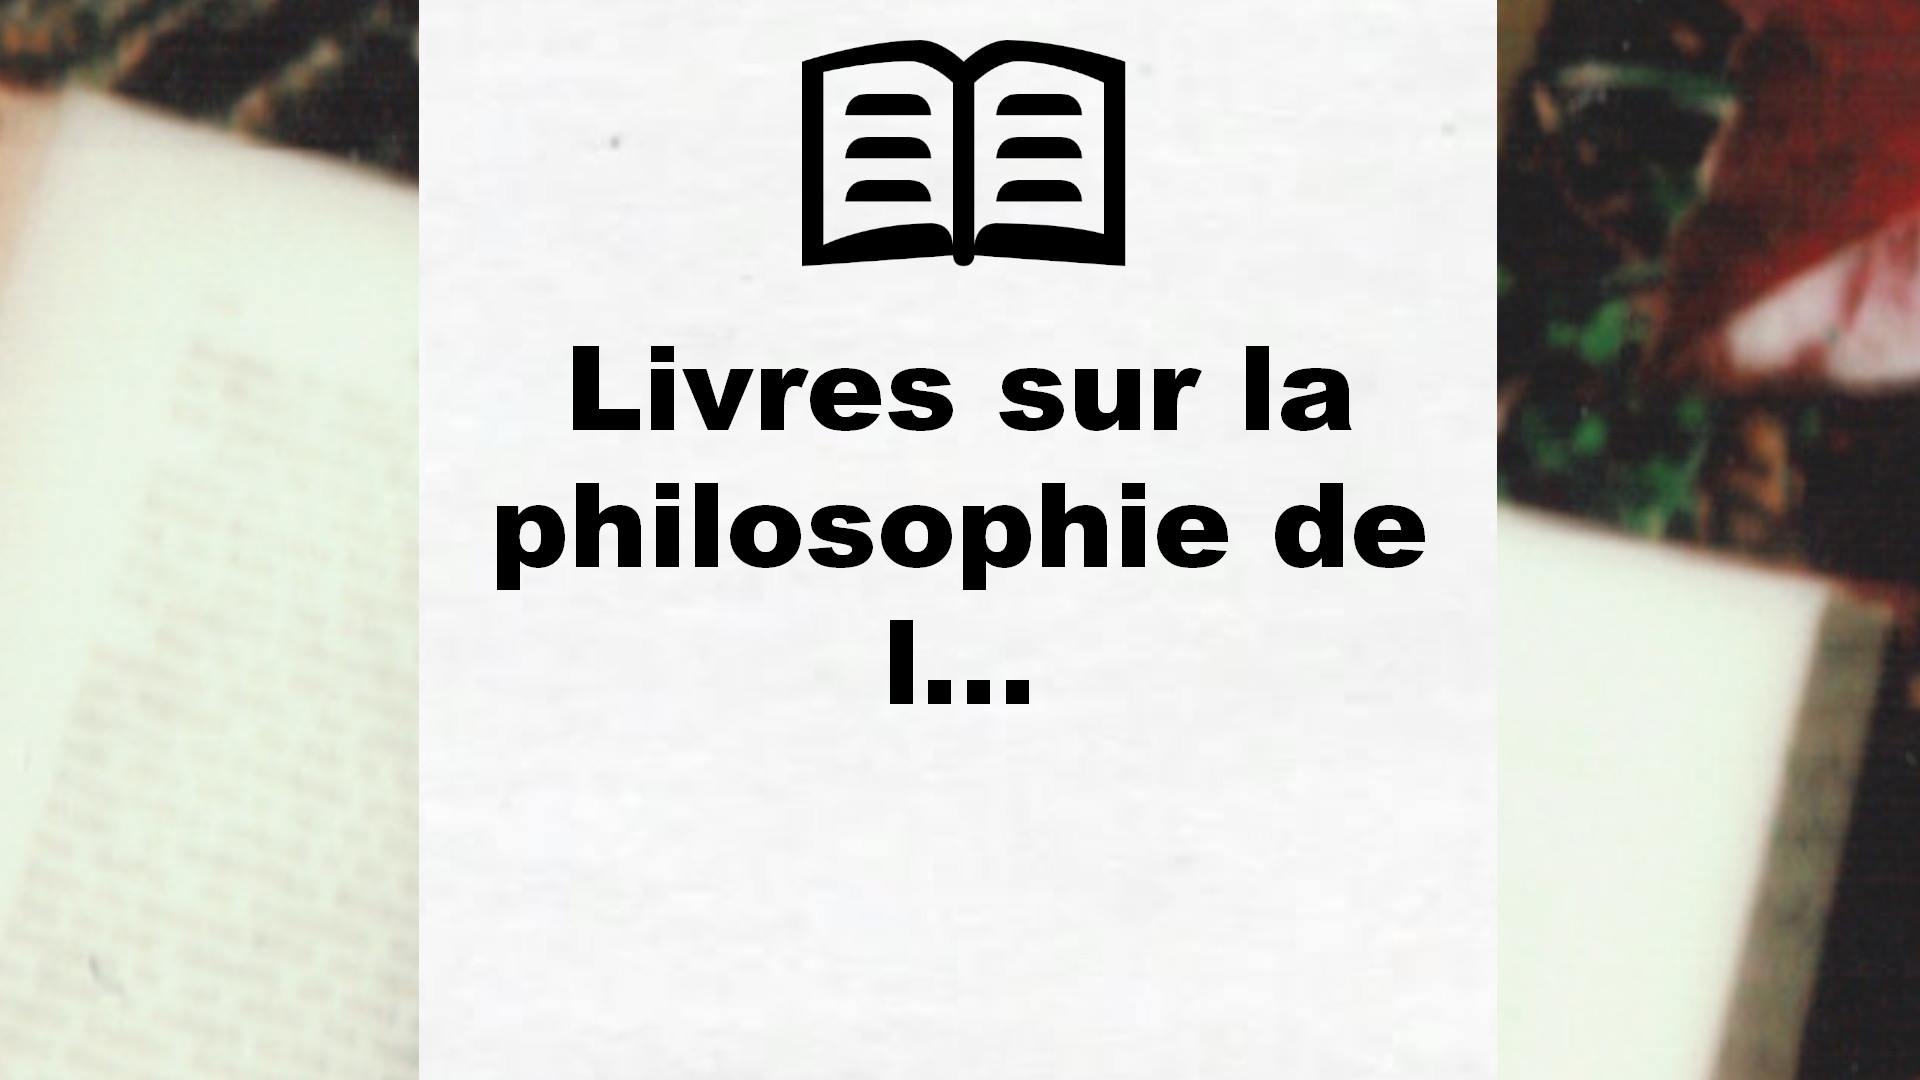 Livres sur la philosophie de la vie